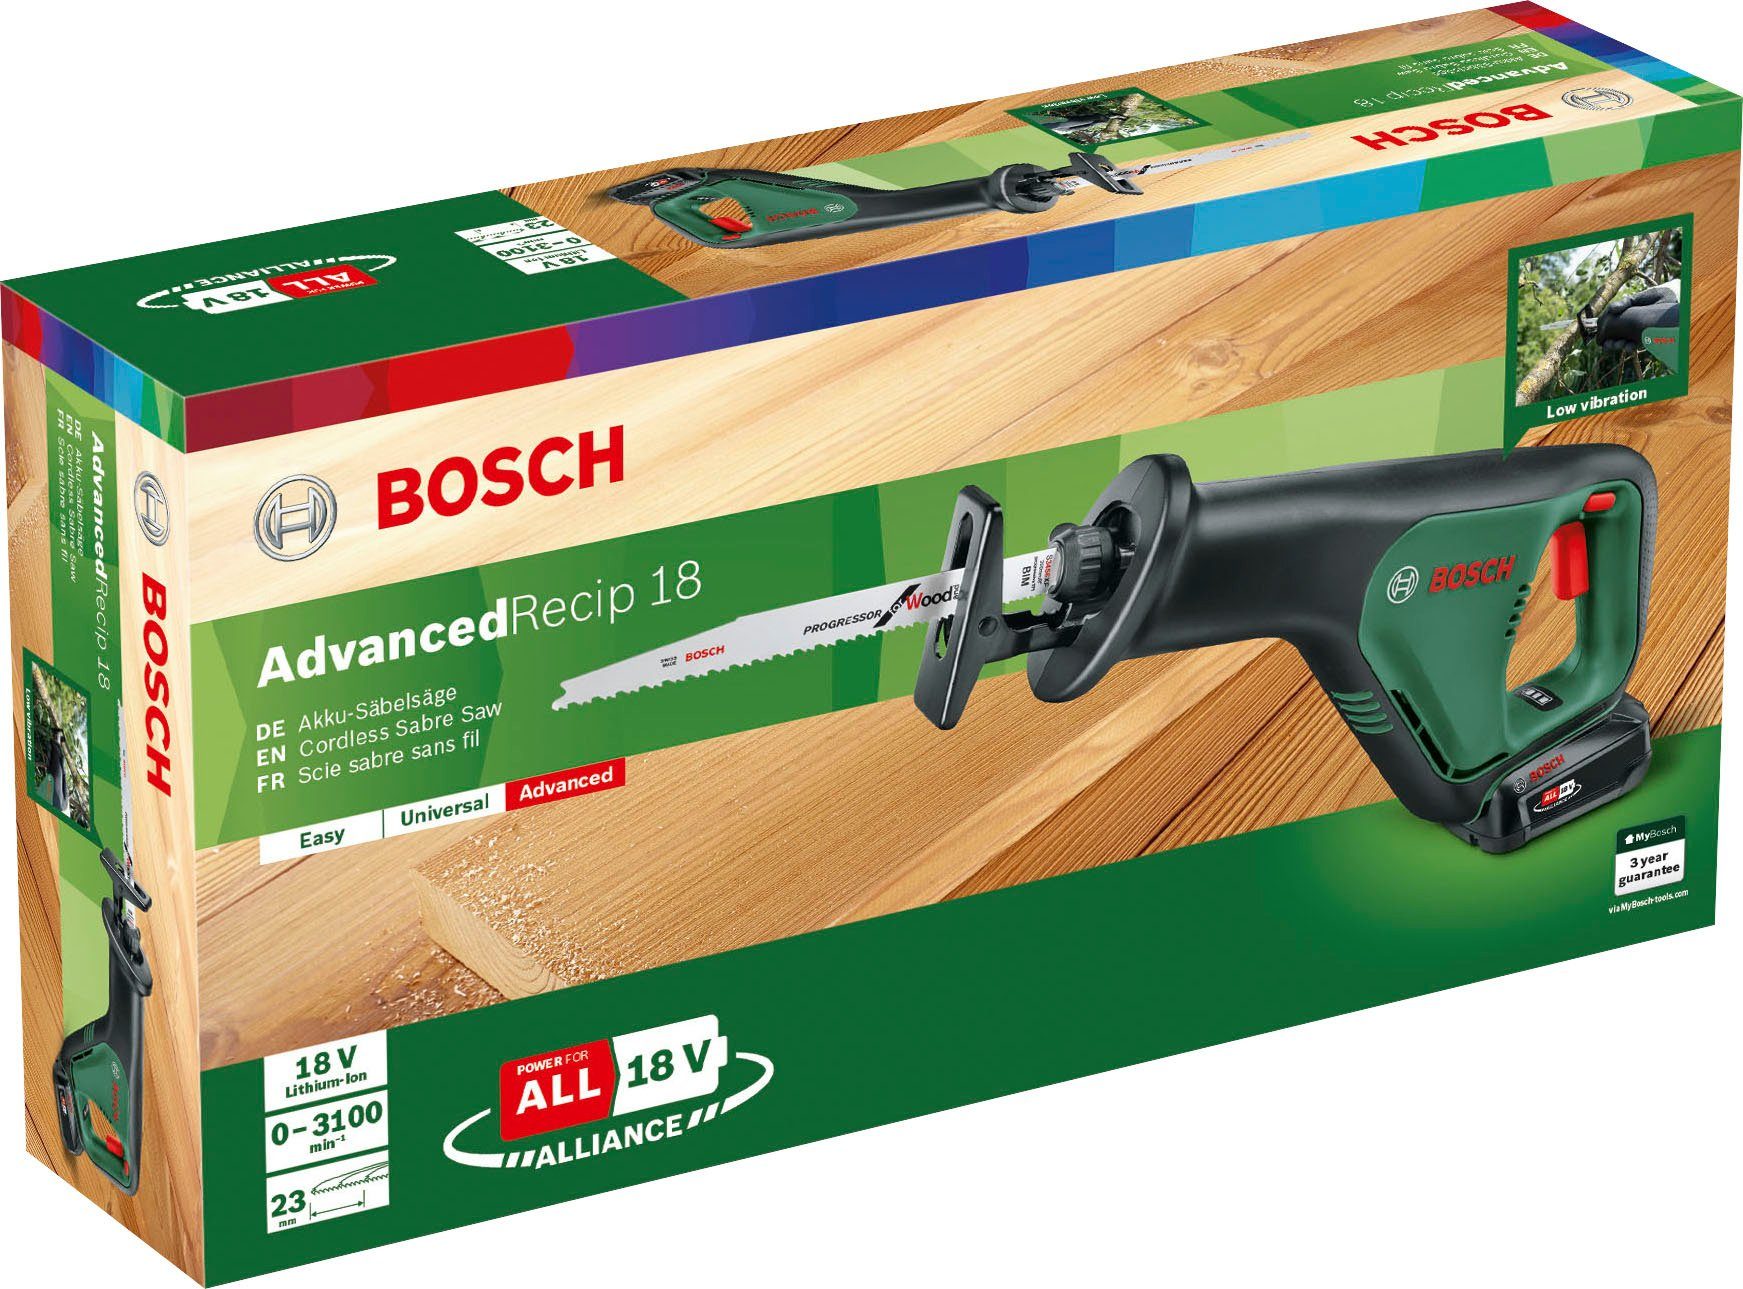 Bosch & AdvancedRecip Garden Ladegerät 18, und Home inkl. Akku Akku-Säbelsäge